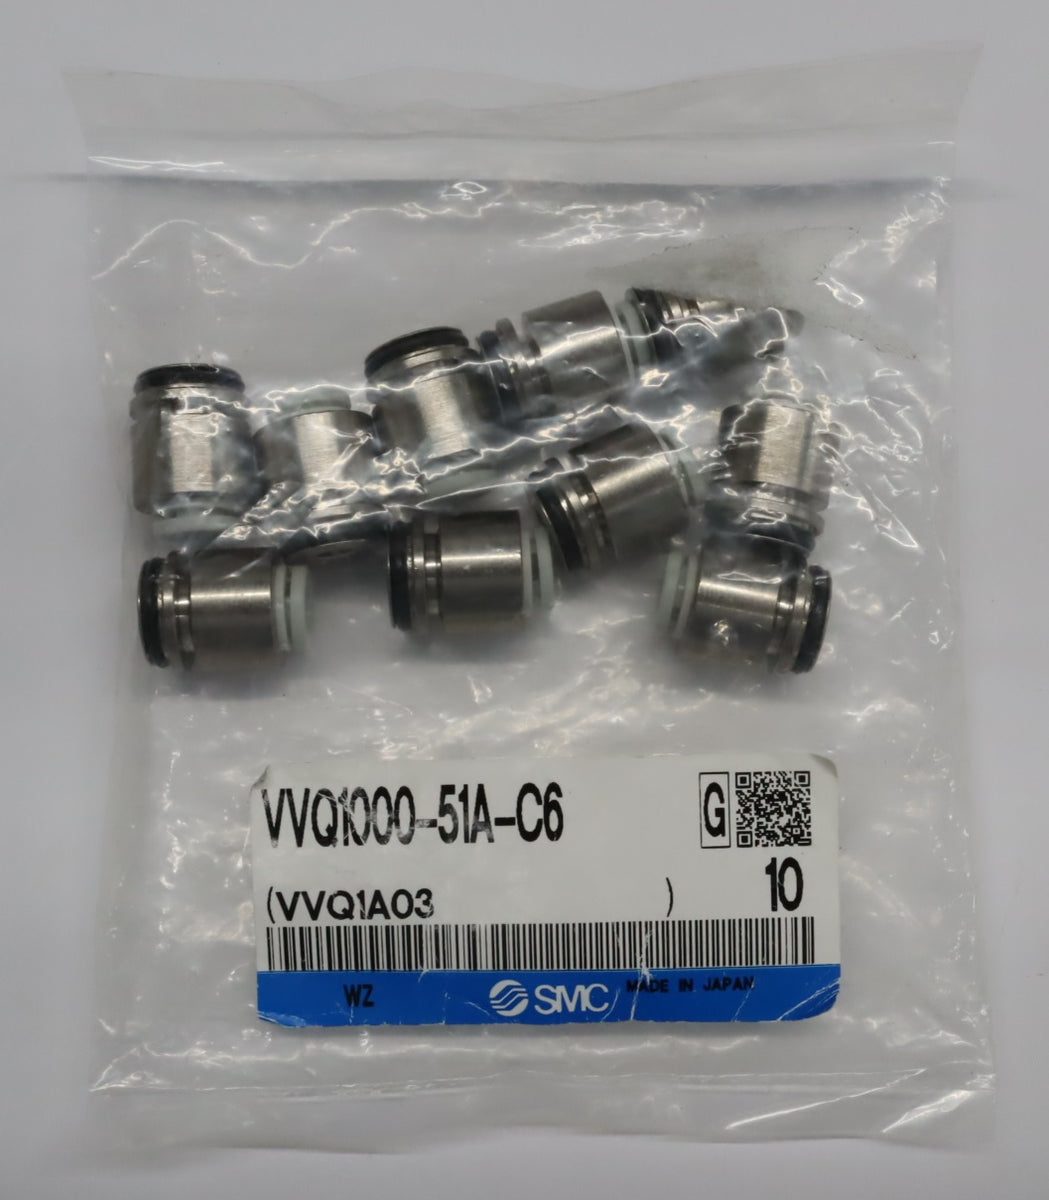 SMC ワンタッチ管継手 VVQ1000-51A-C6（10個入） – メンテナンスパーツ